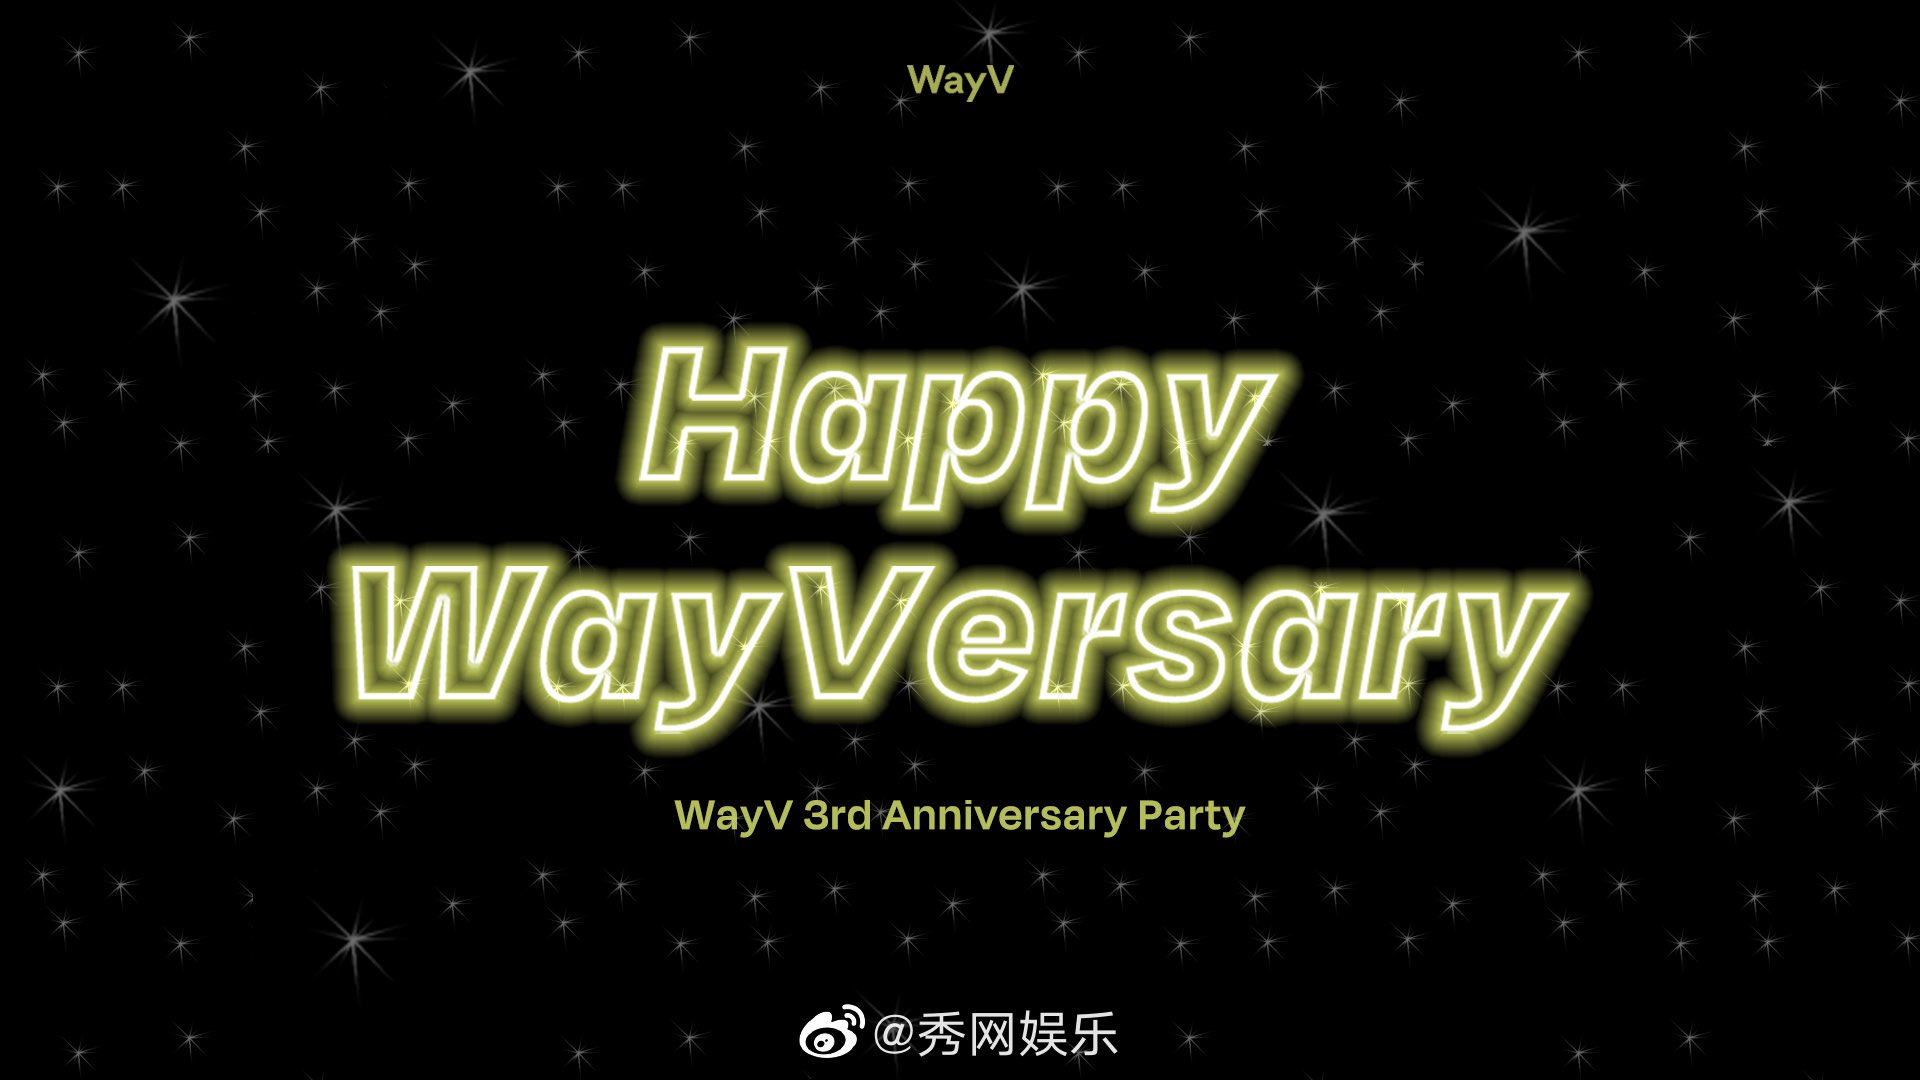 Wayv anniversary